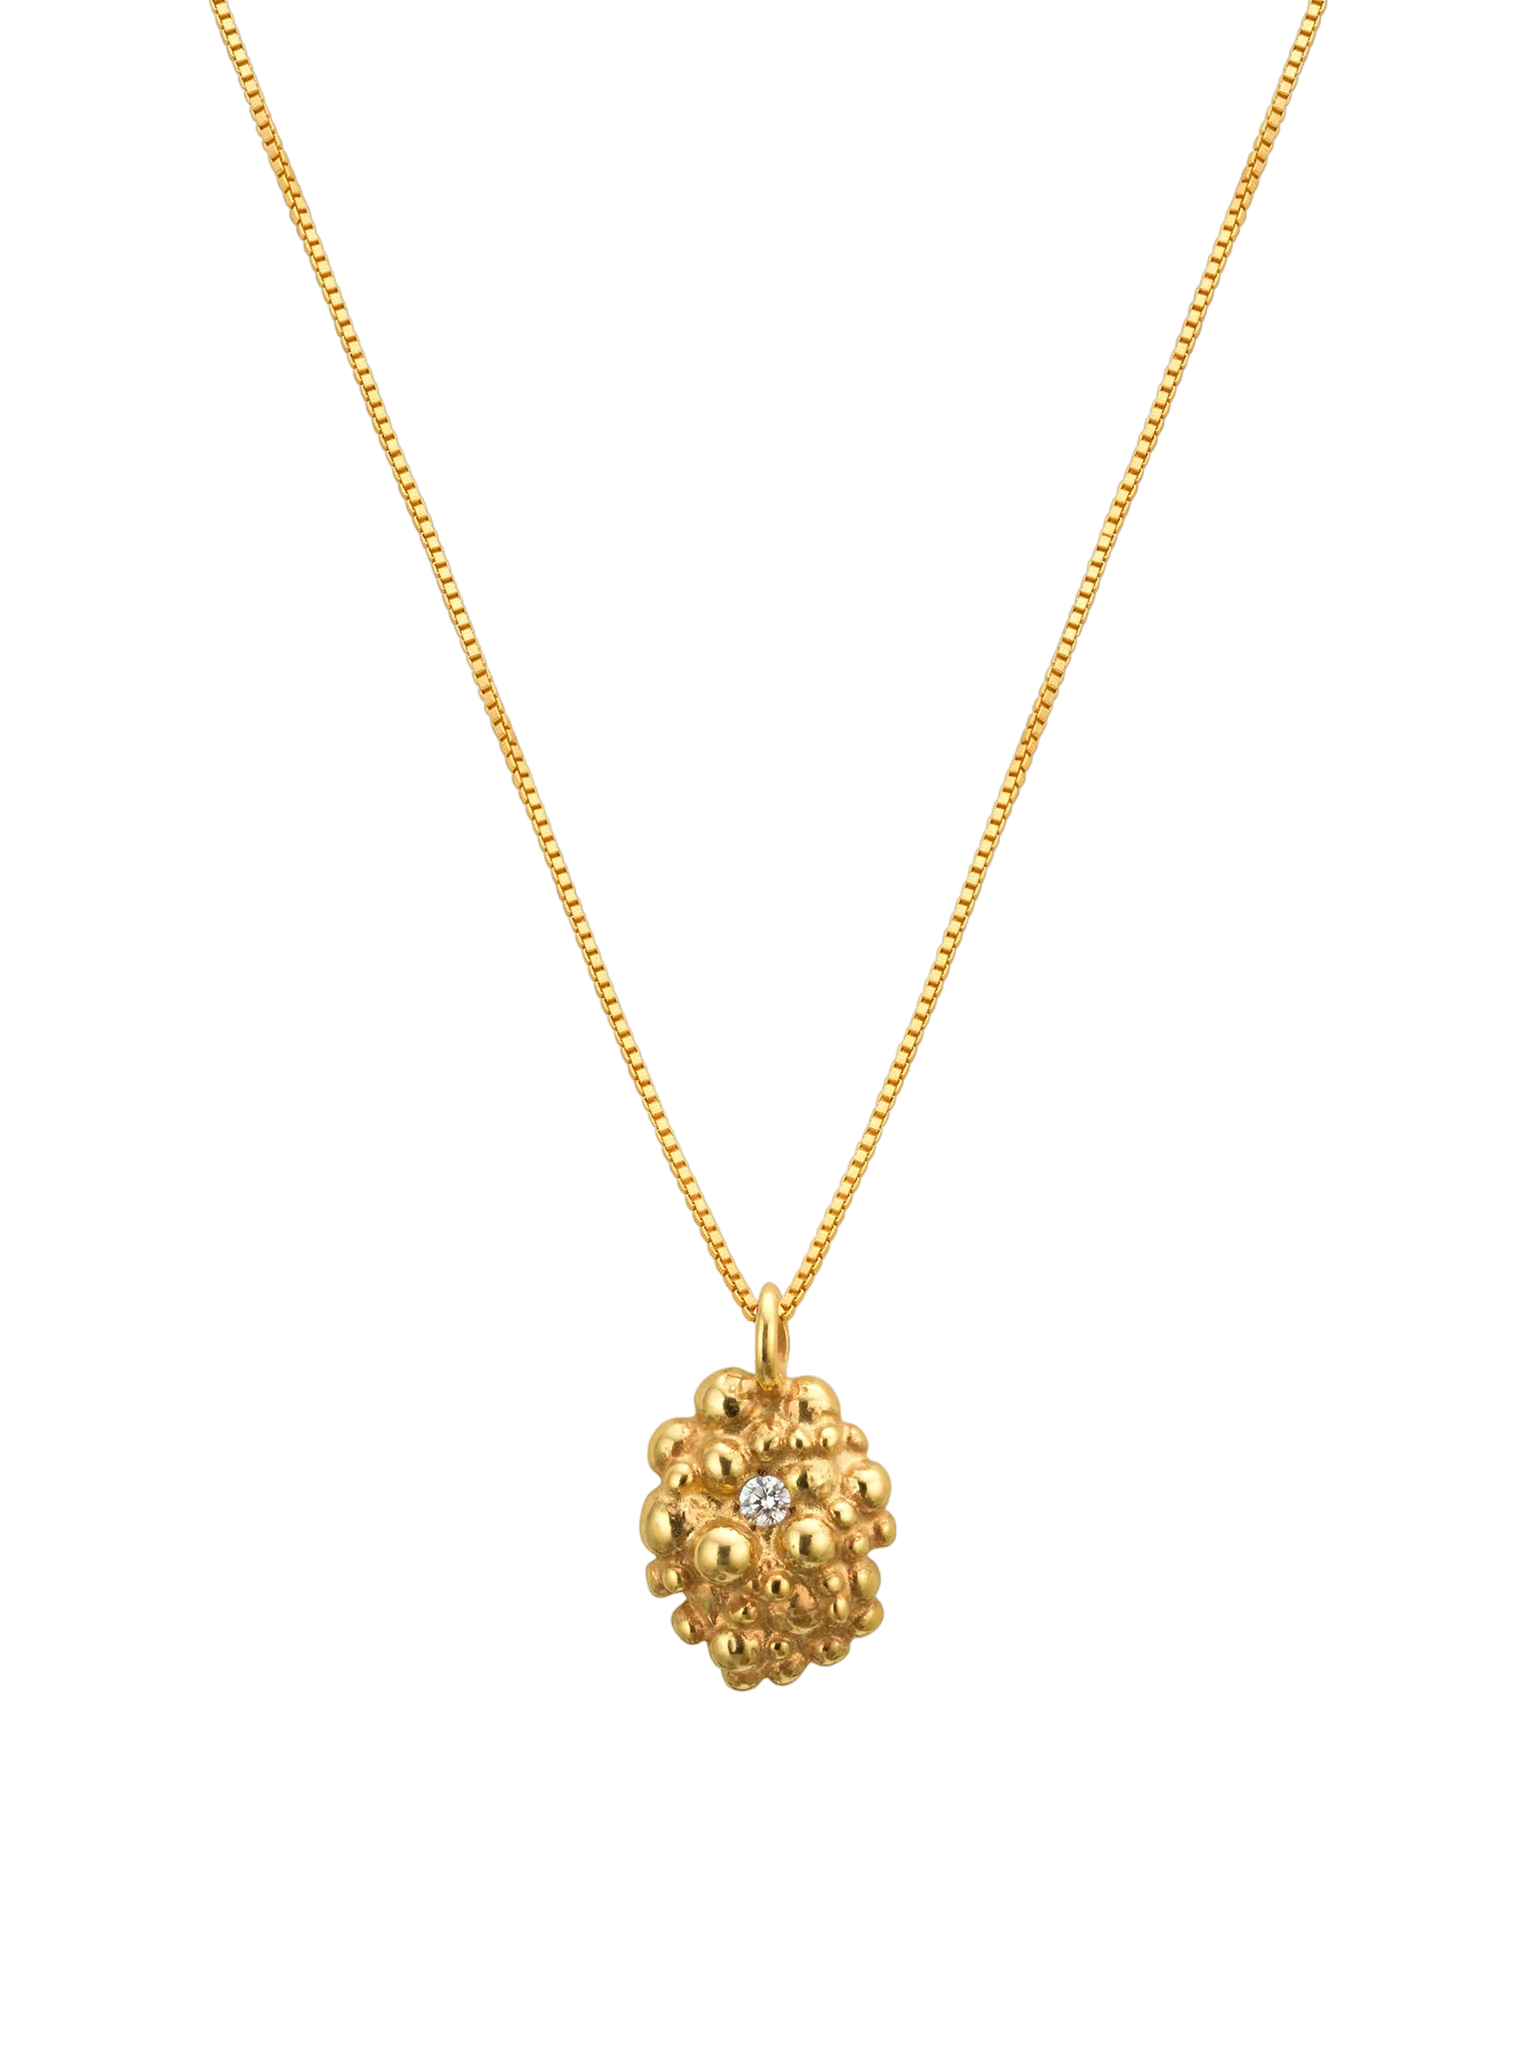 Céleste deux oval necklace 14ct gold and diamond